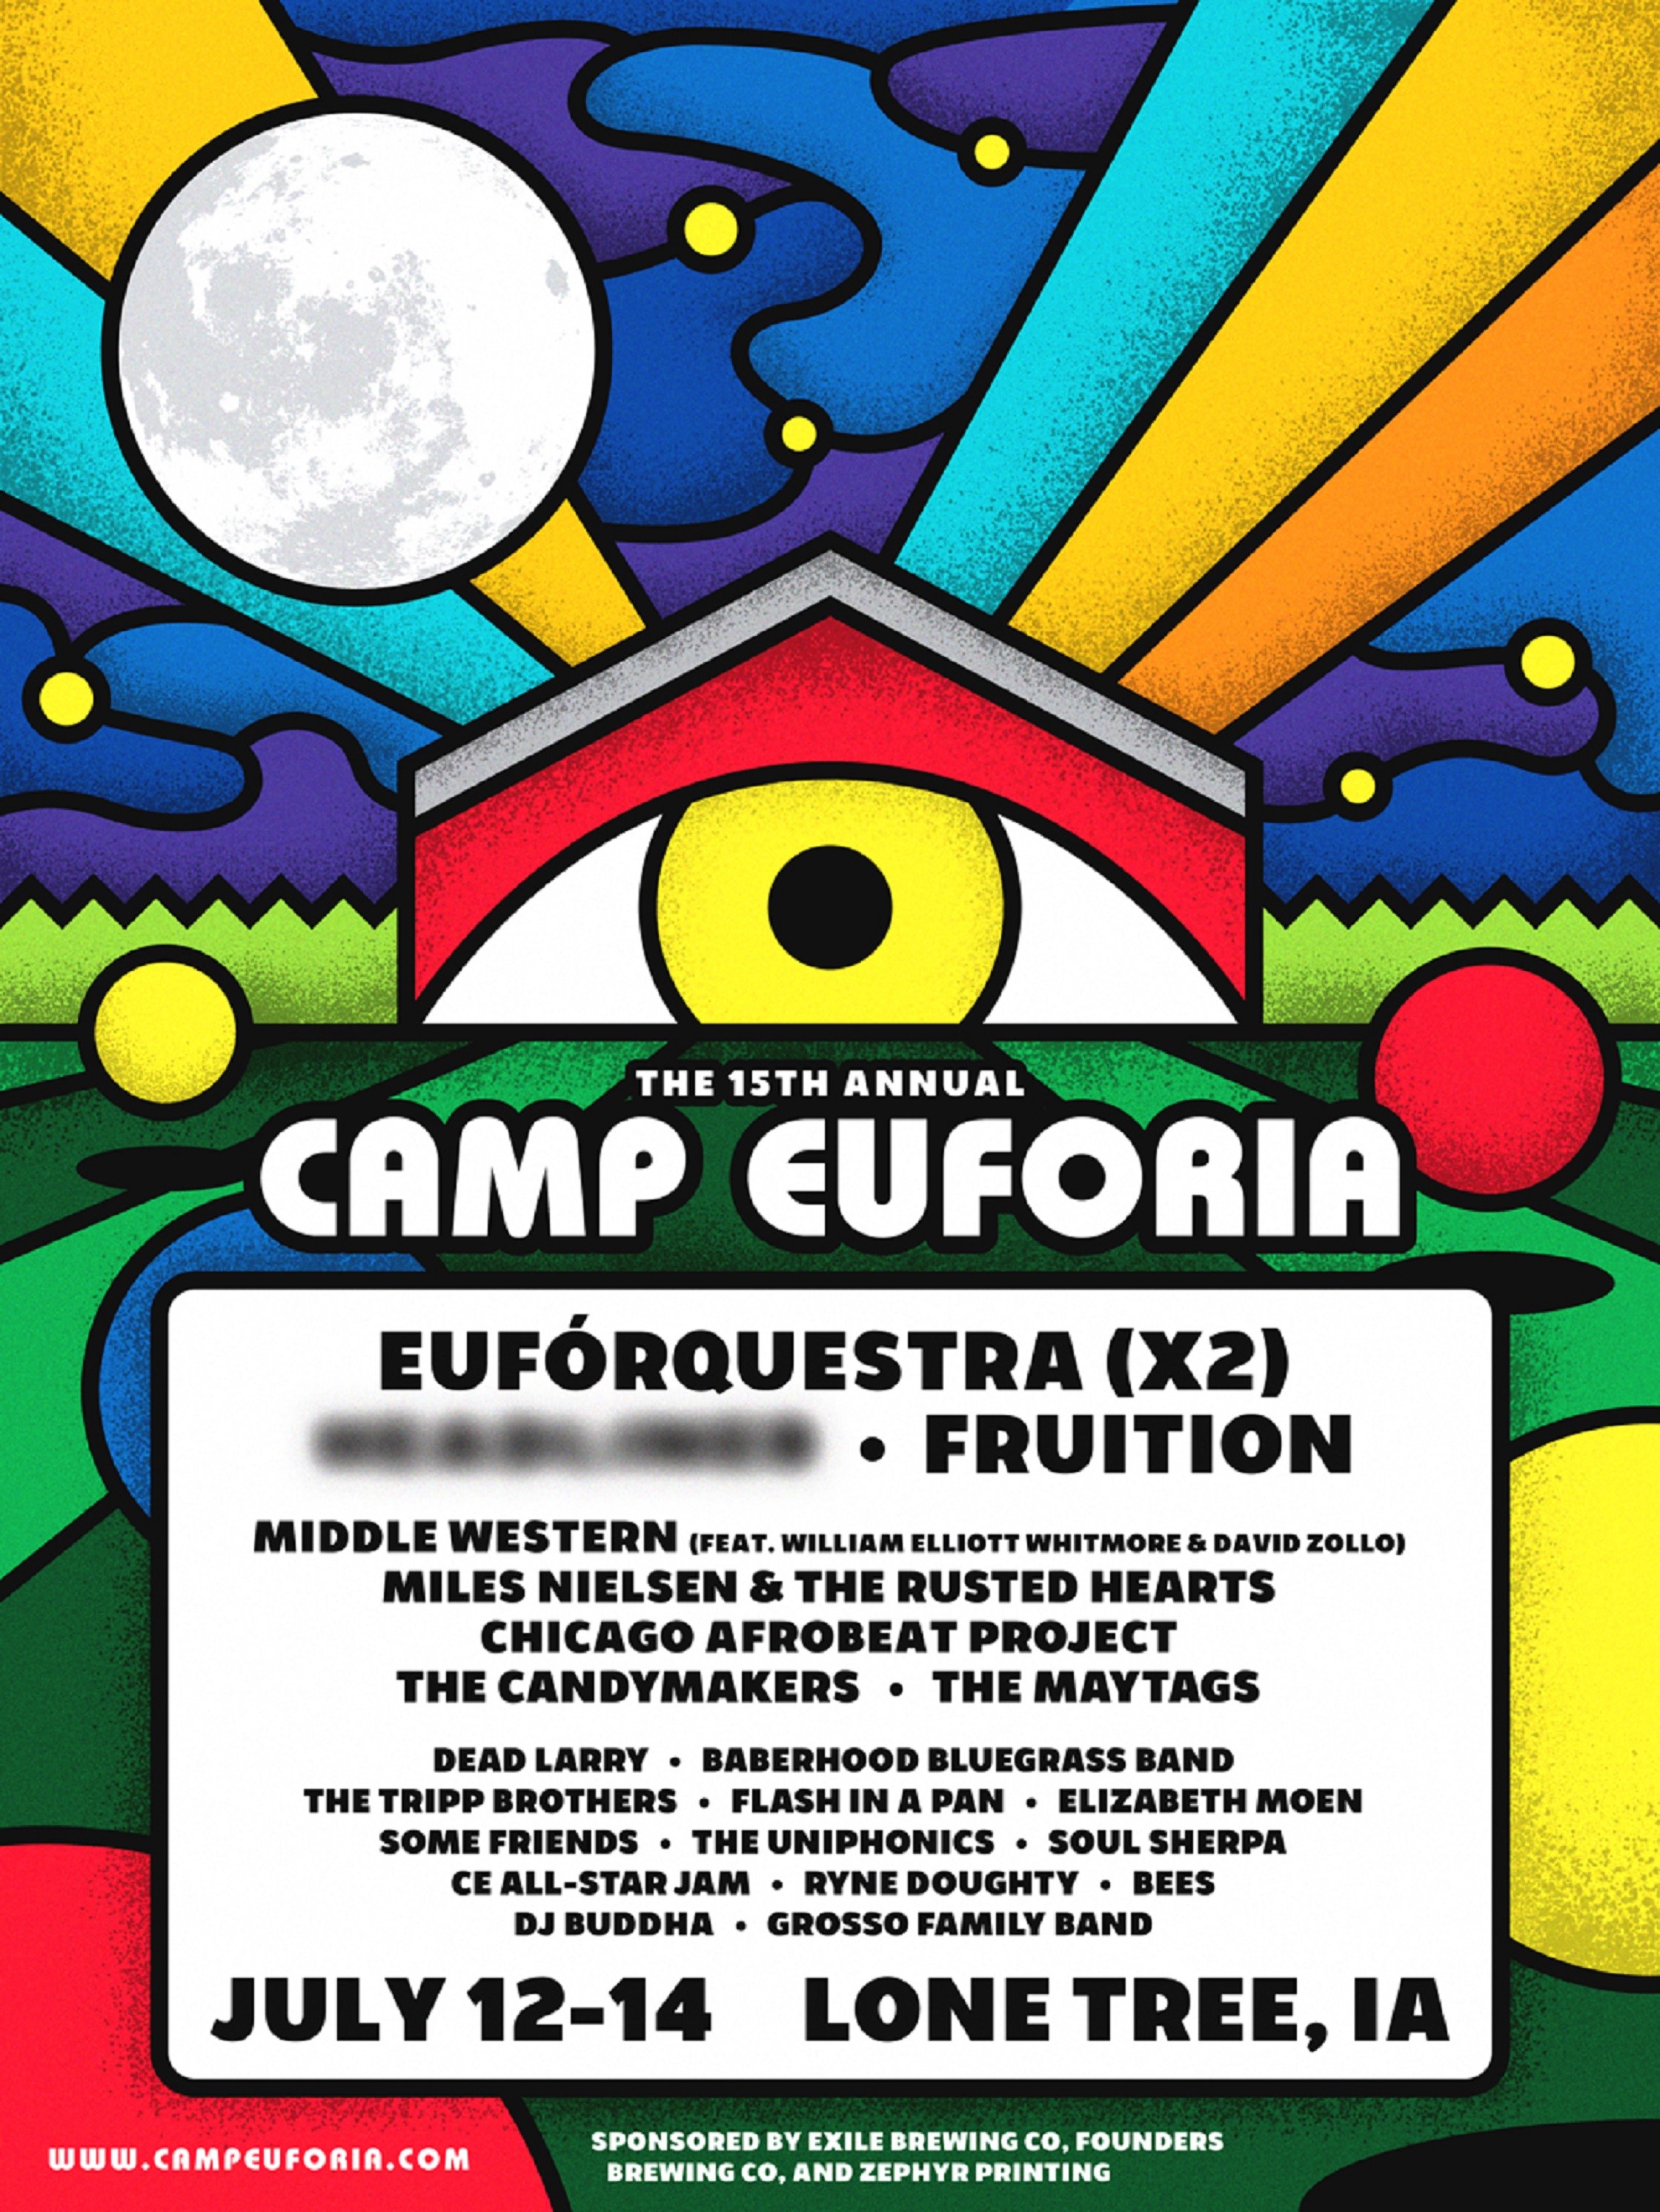 Camp Euforia Announces Initial 2018 Lineup